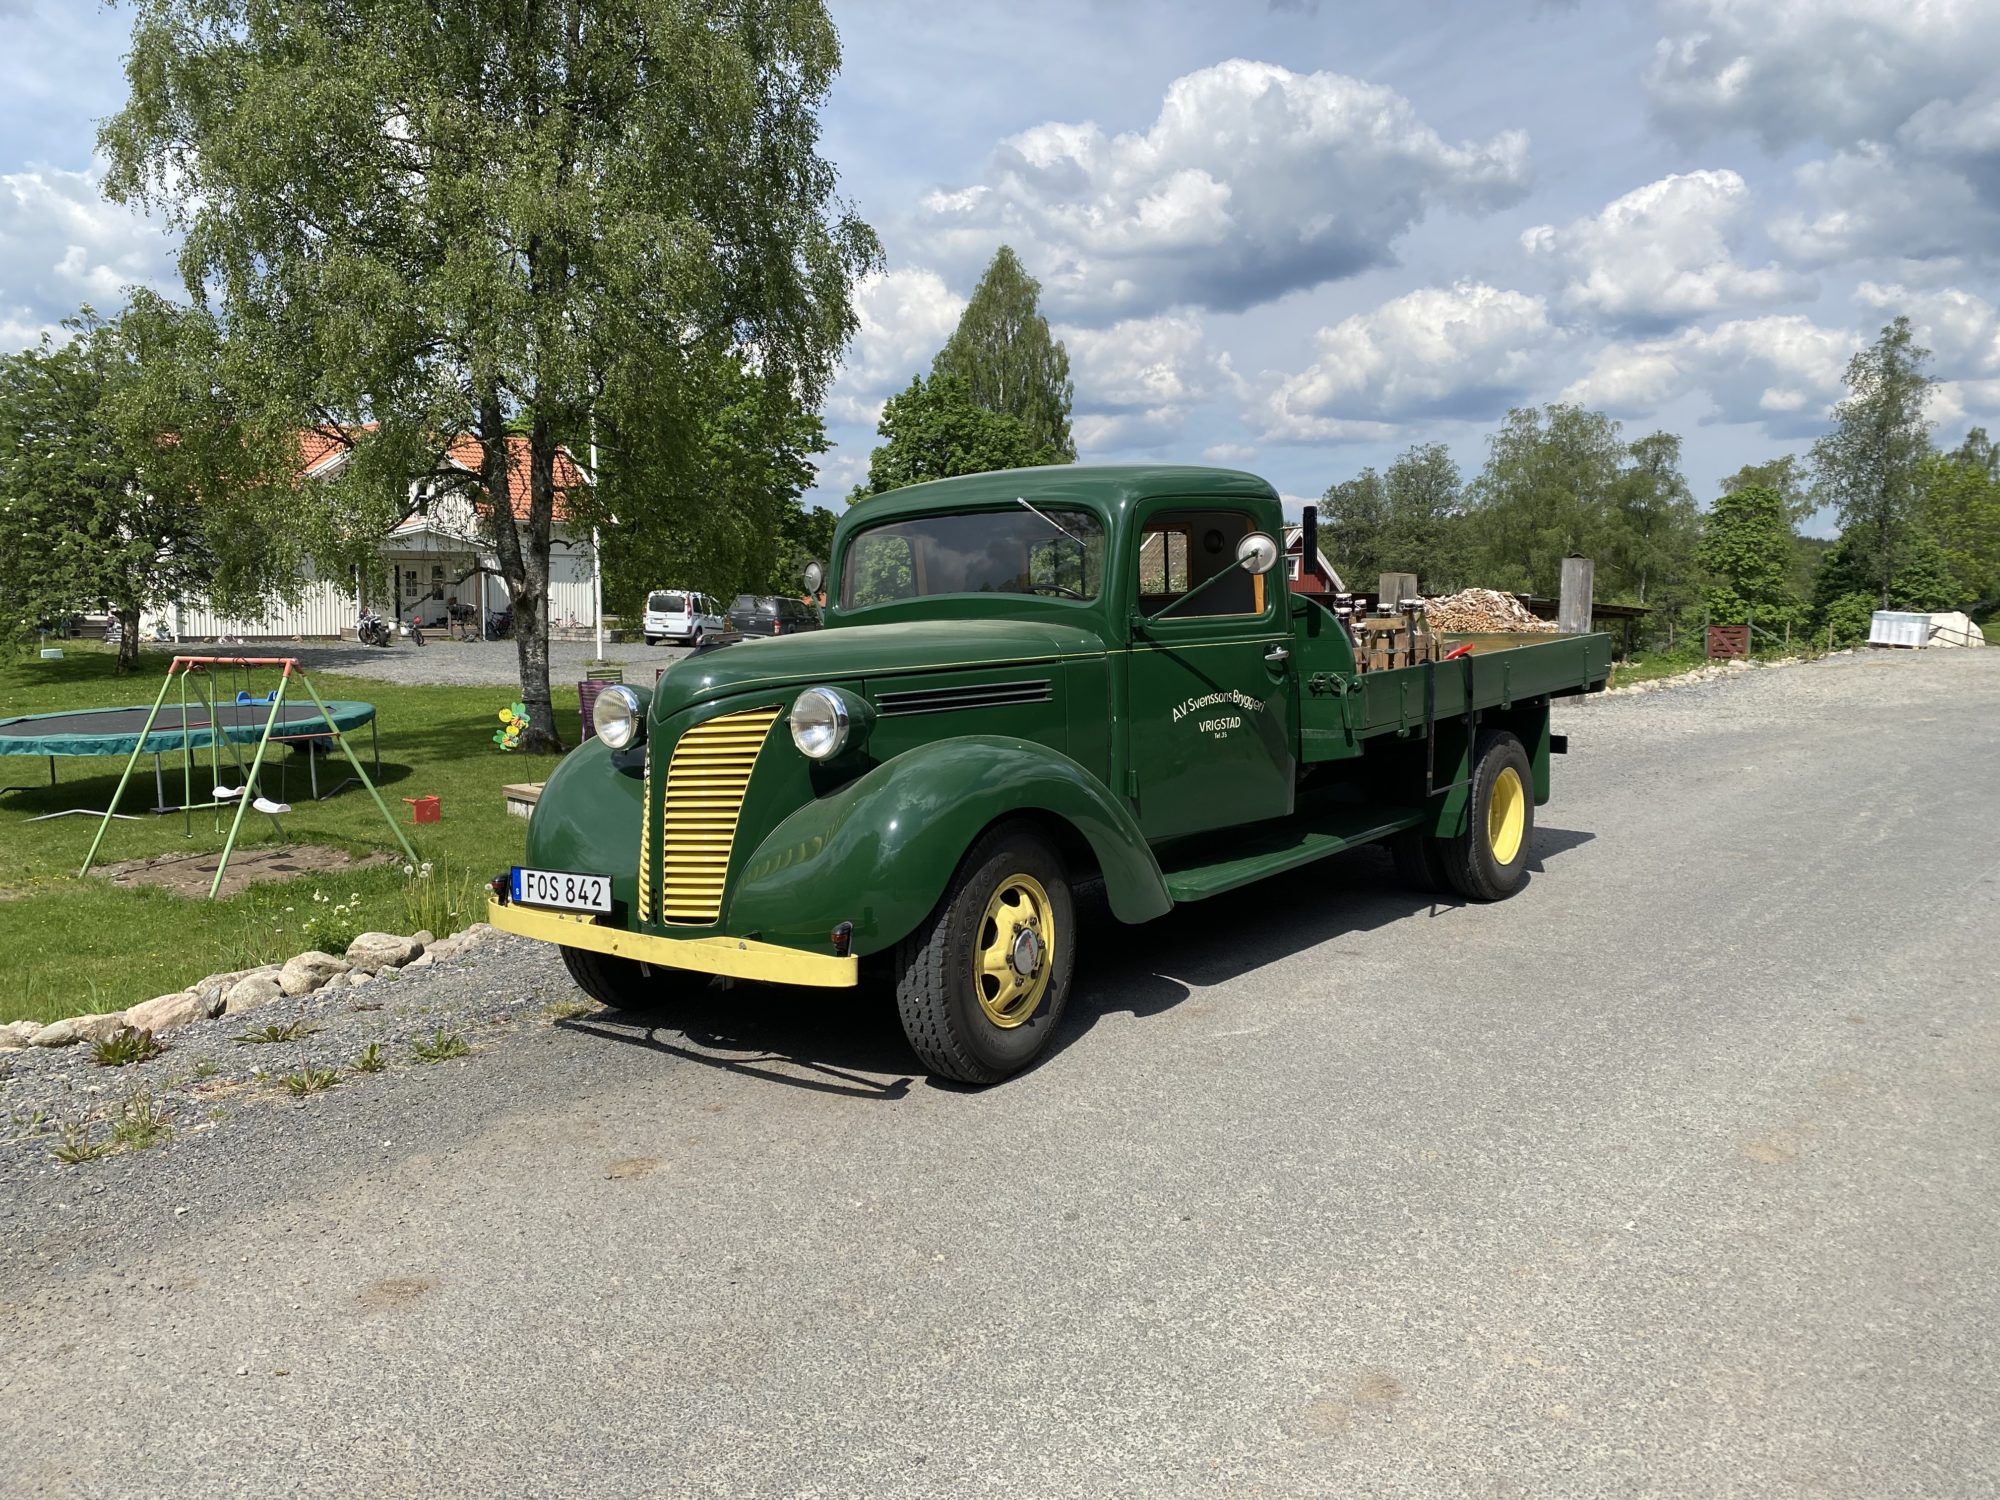 Mycket fin och charmig lastbil
Noggrant renoverad från grunden
Full dokumentation och ägarhistorik

 Finns Hemma